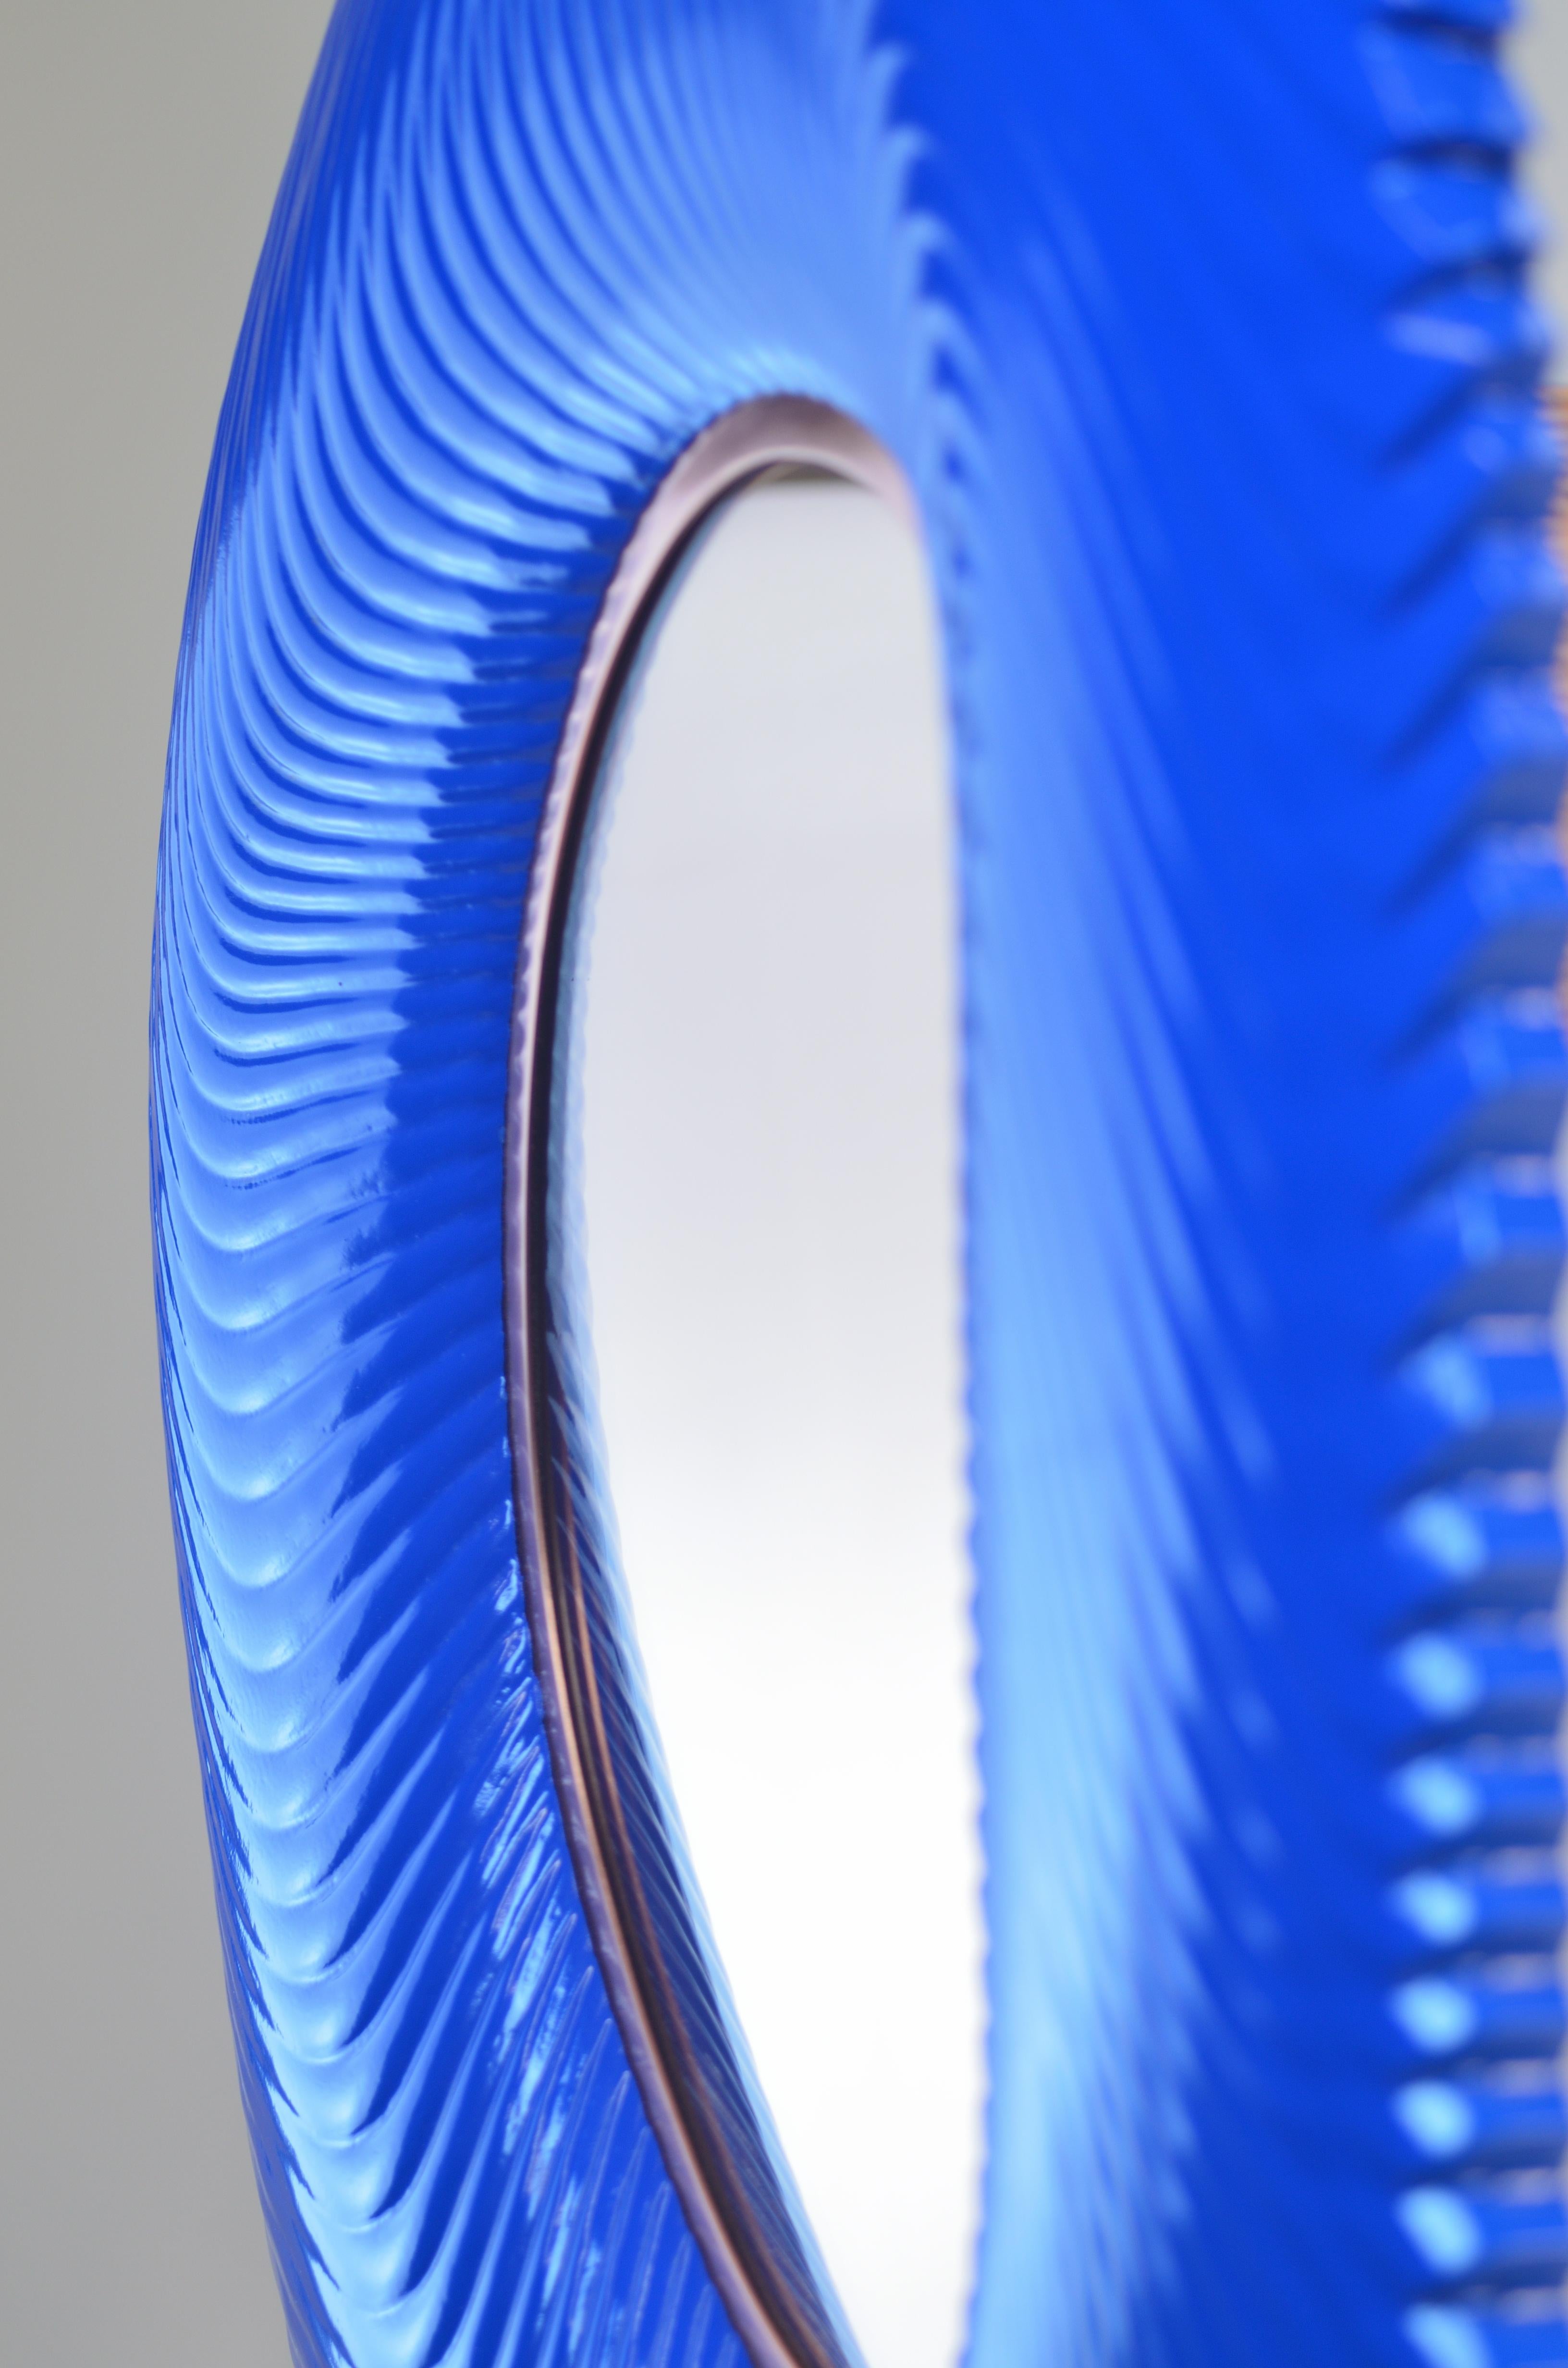 Le miroir tendu Ares bleu lapis en vernis satiné avec miroir pêche présente une magnifique laque bleu lapis sur un cadre surréaliste usiné en 3D. Le miroir pêche est contrebalancé par une garniture en cuivre, qui se marie harmonieusement avec la